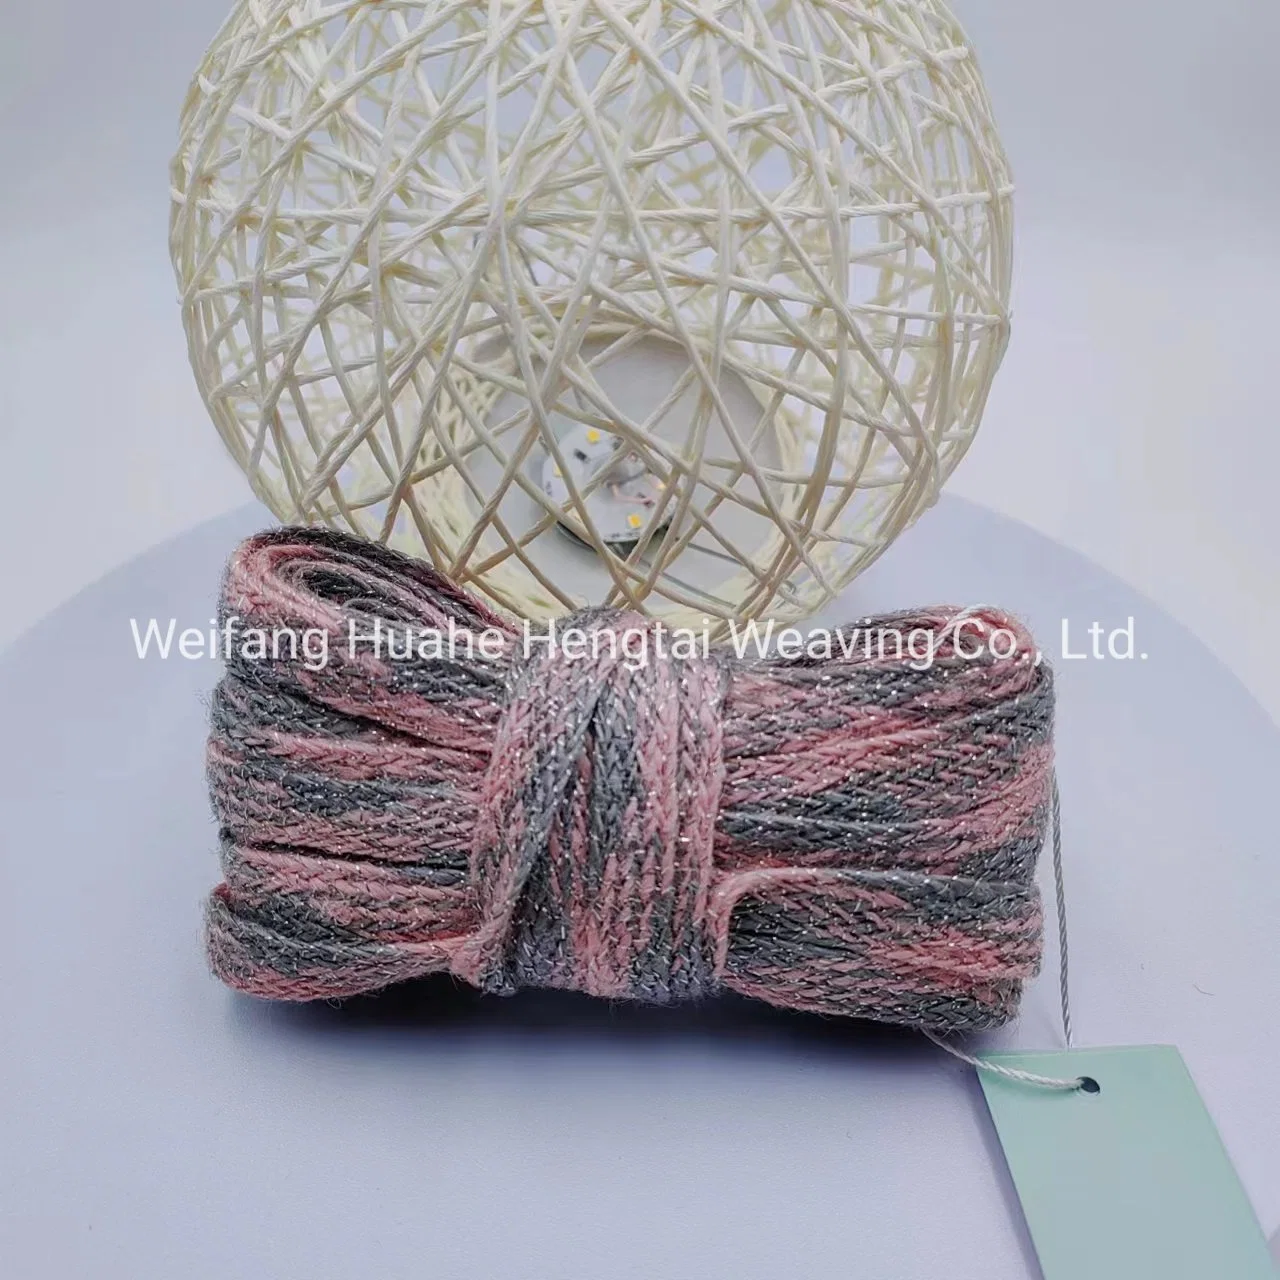 Großhandel/Lieferant von chinesischen Stil gewebten Bänder, Seide und Jute Weaving